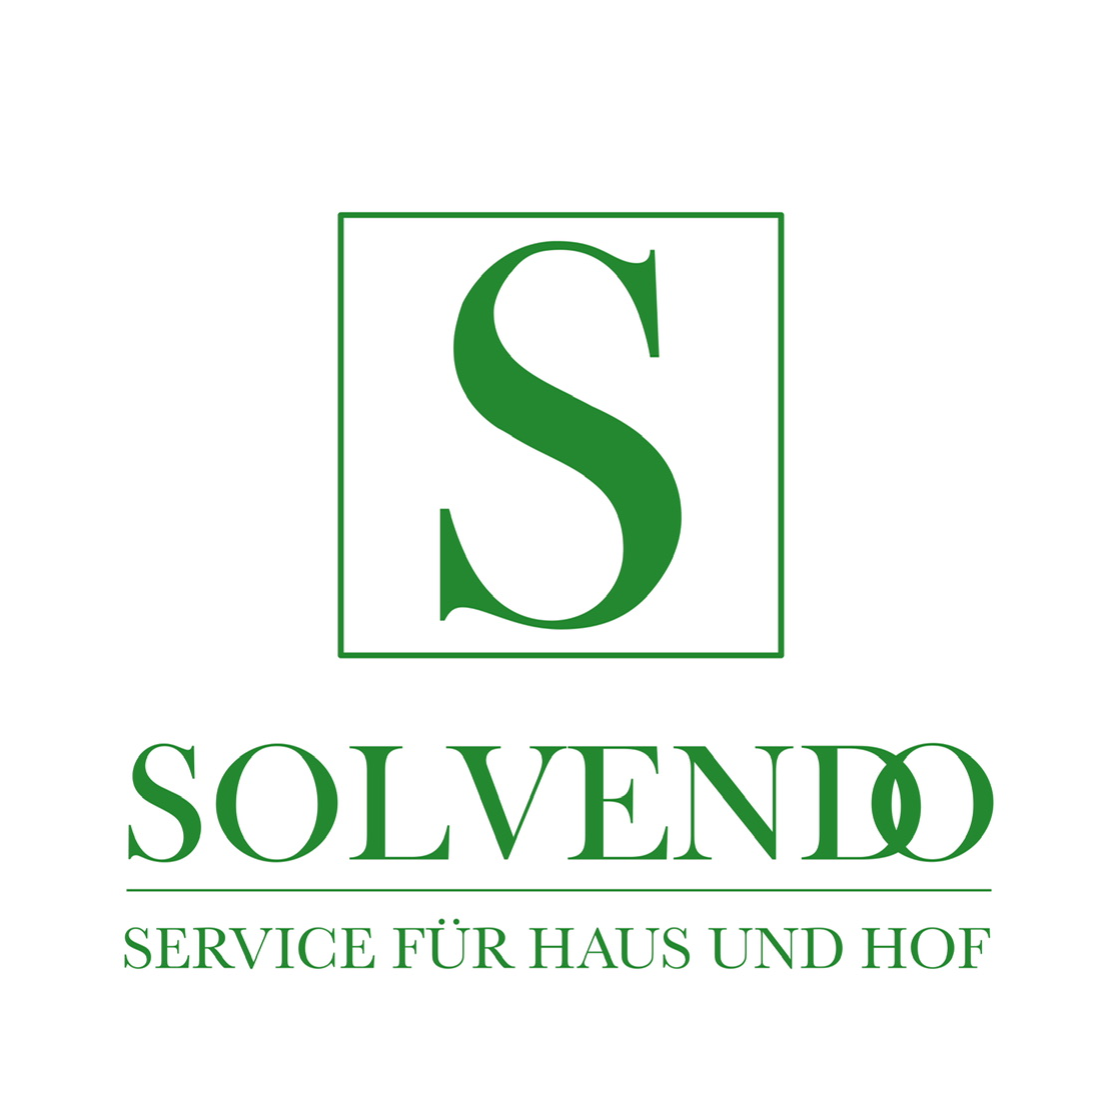 Kundenbild groß 32 Solvendo - Service für Haus und Hof